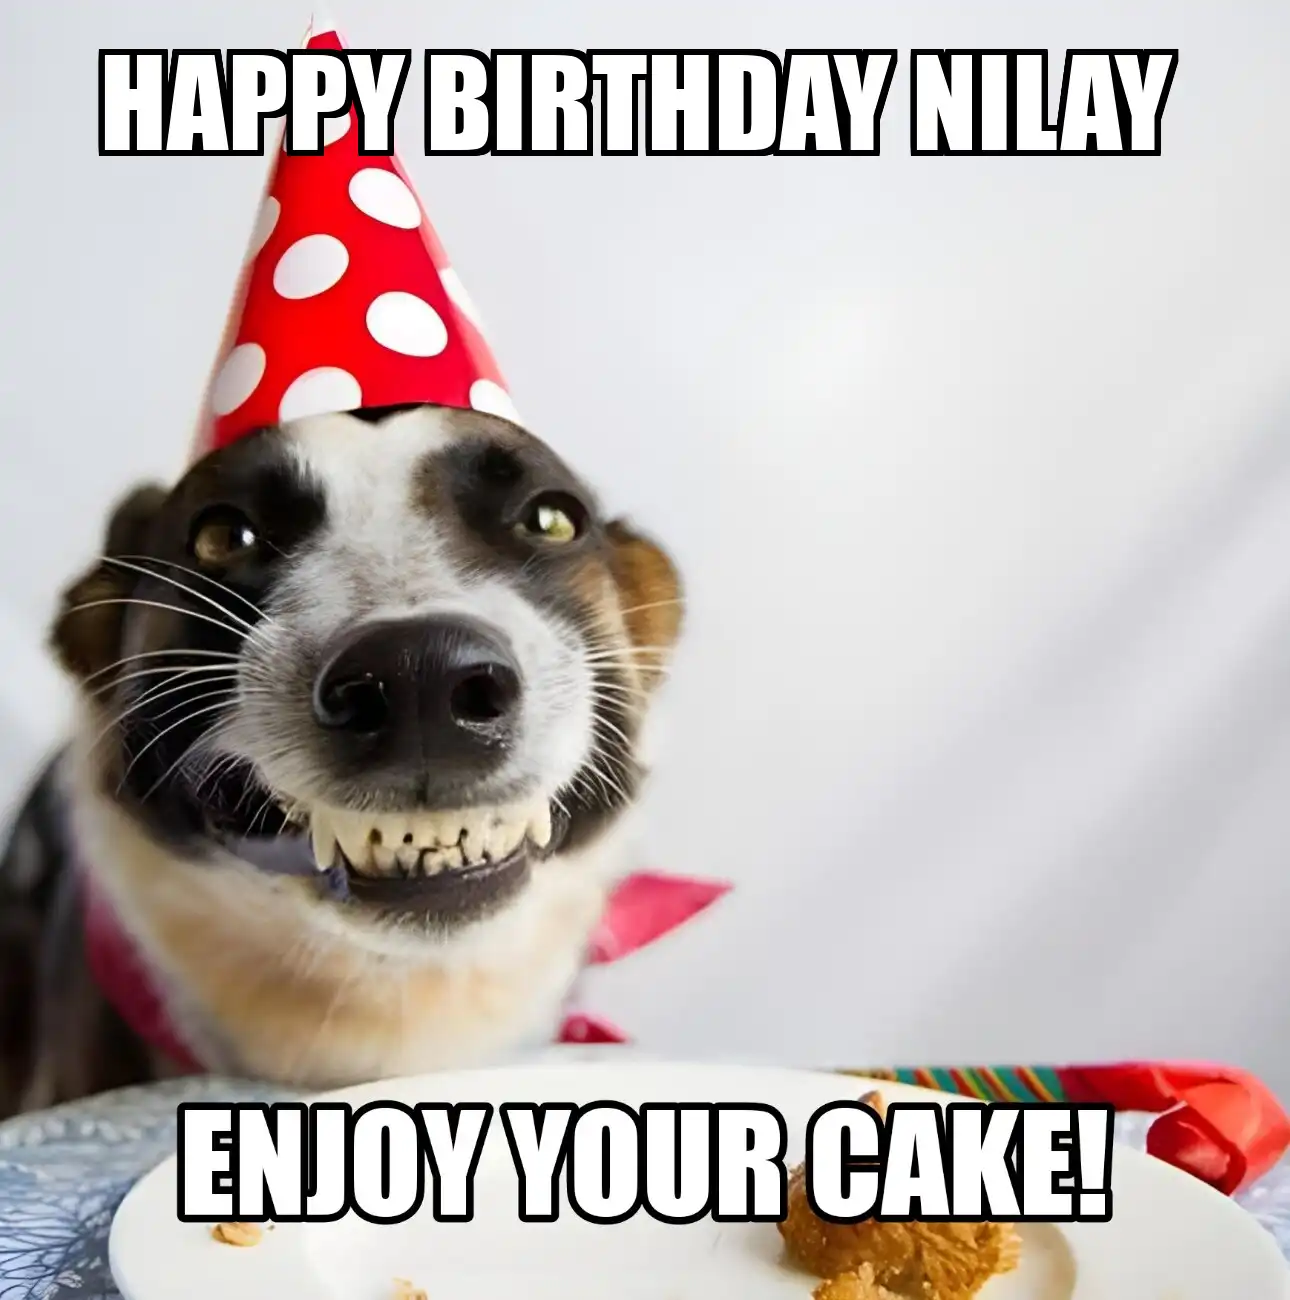 Happy Birthday Nilay Enjoy Your Cake Dog Meme